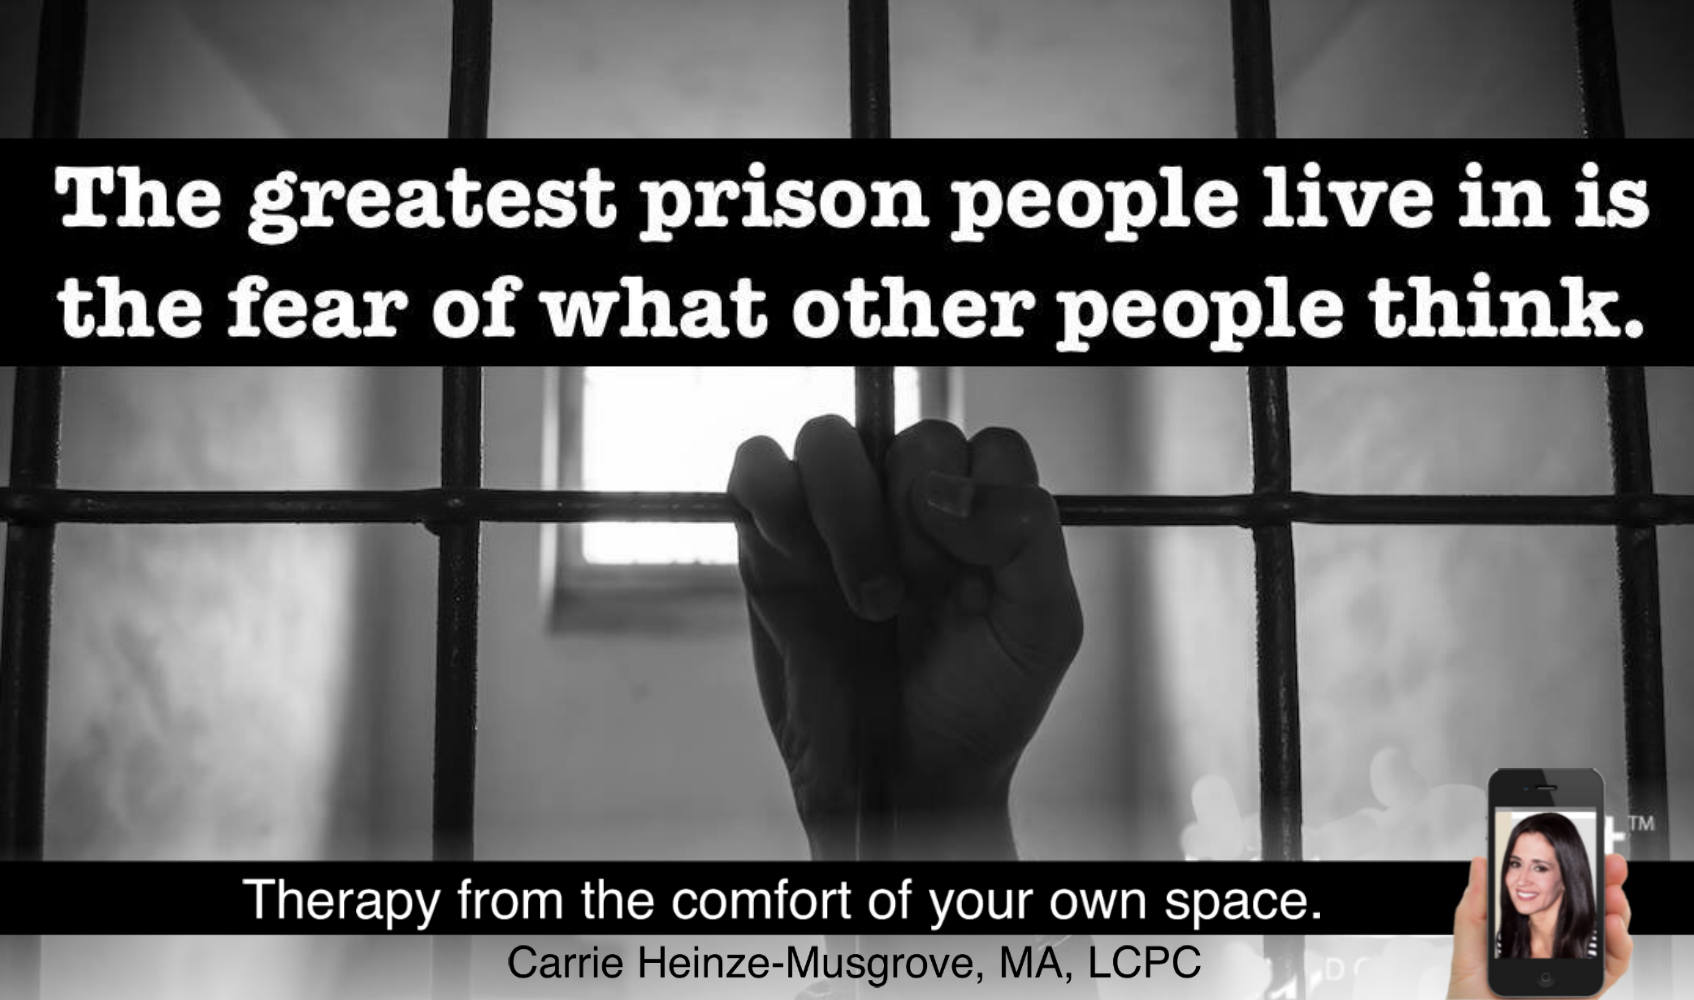 social questions about prison